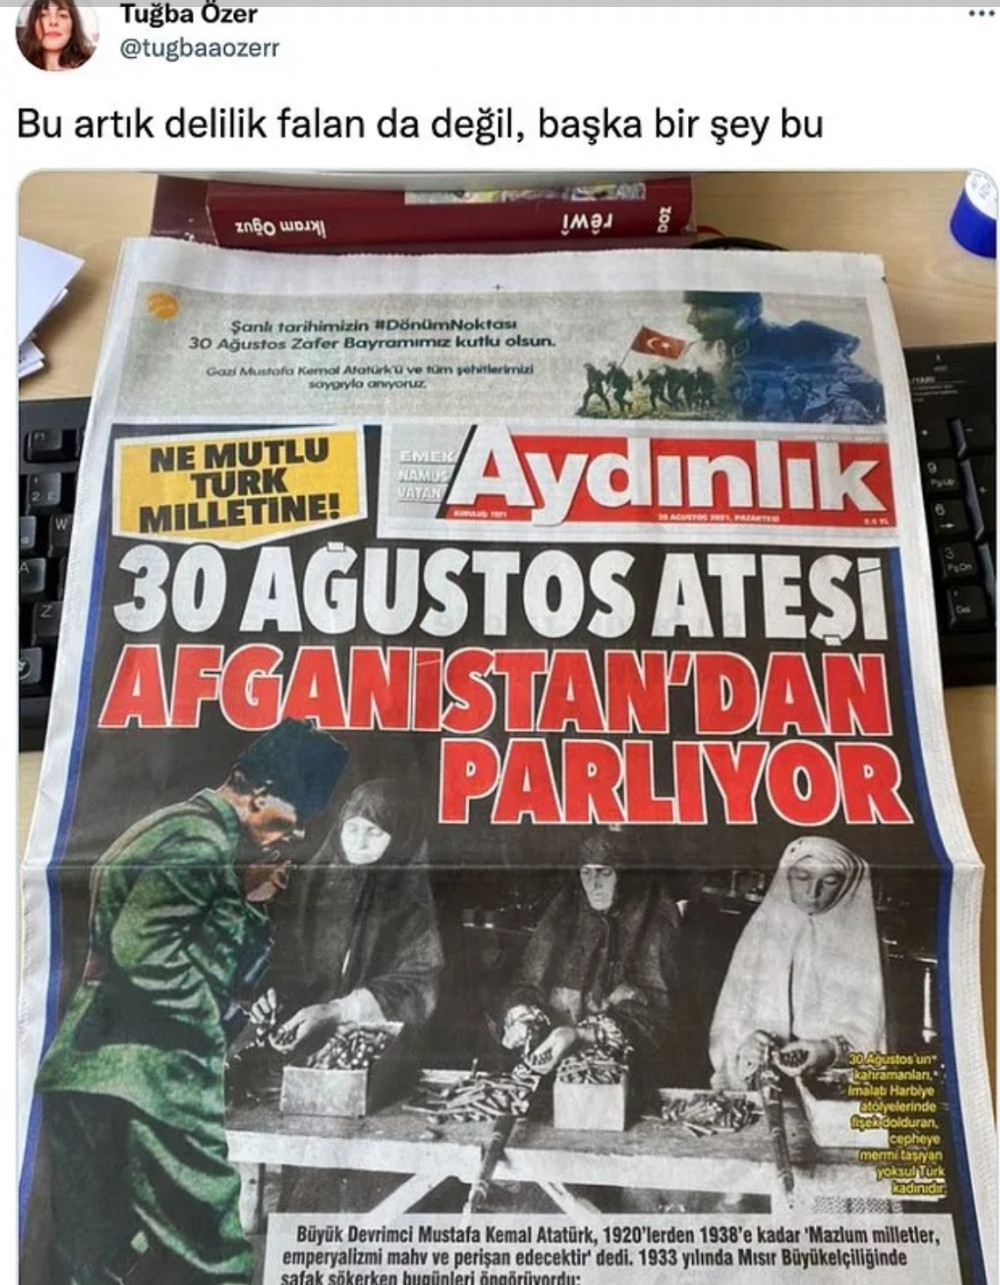 Perinçek ve Aydınlık Gazetesi 30 Ağustos Manşeti Yüzünden Sert Tepki Gördü - Resim: 4